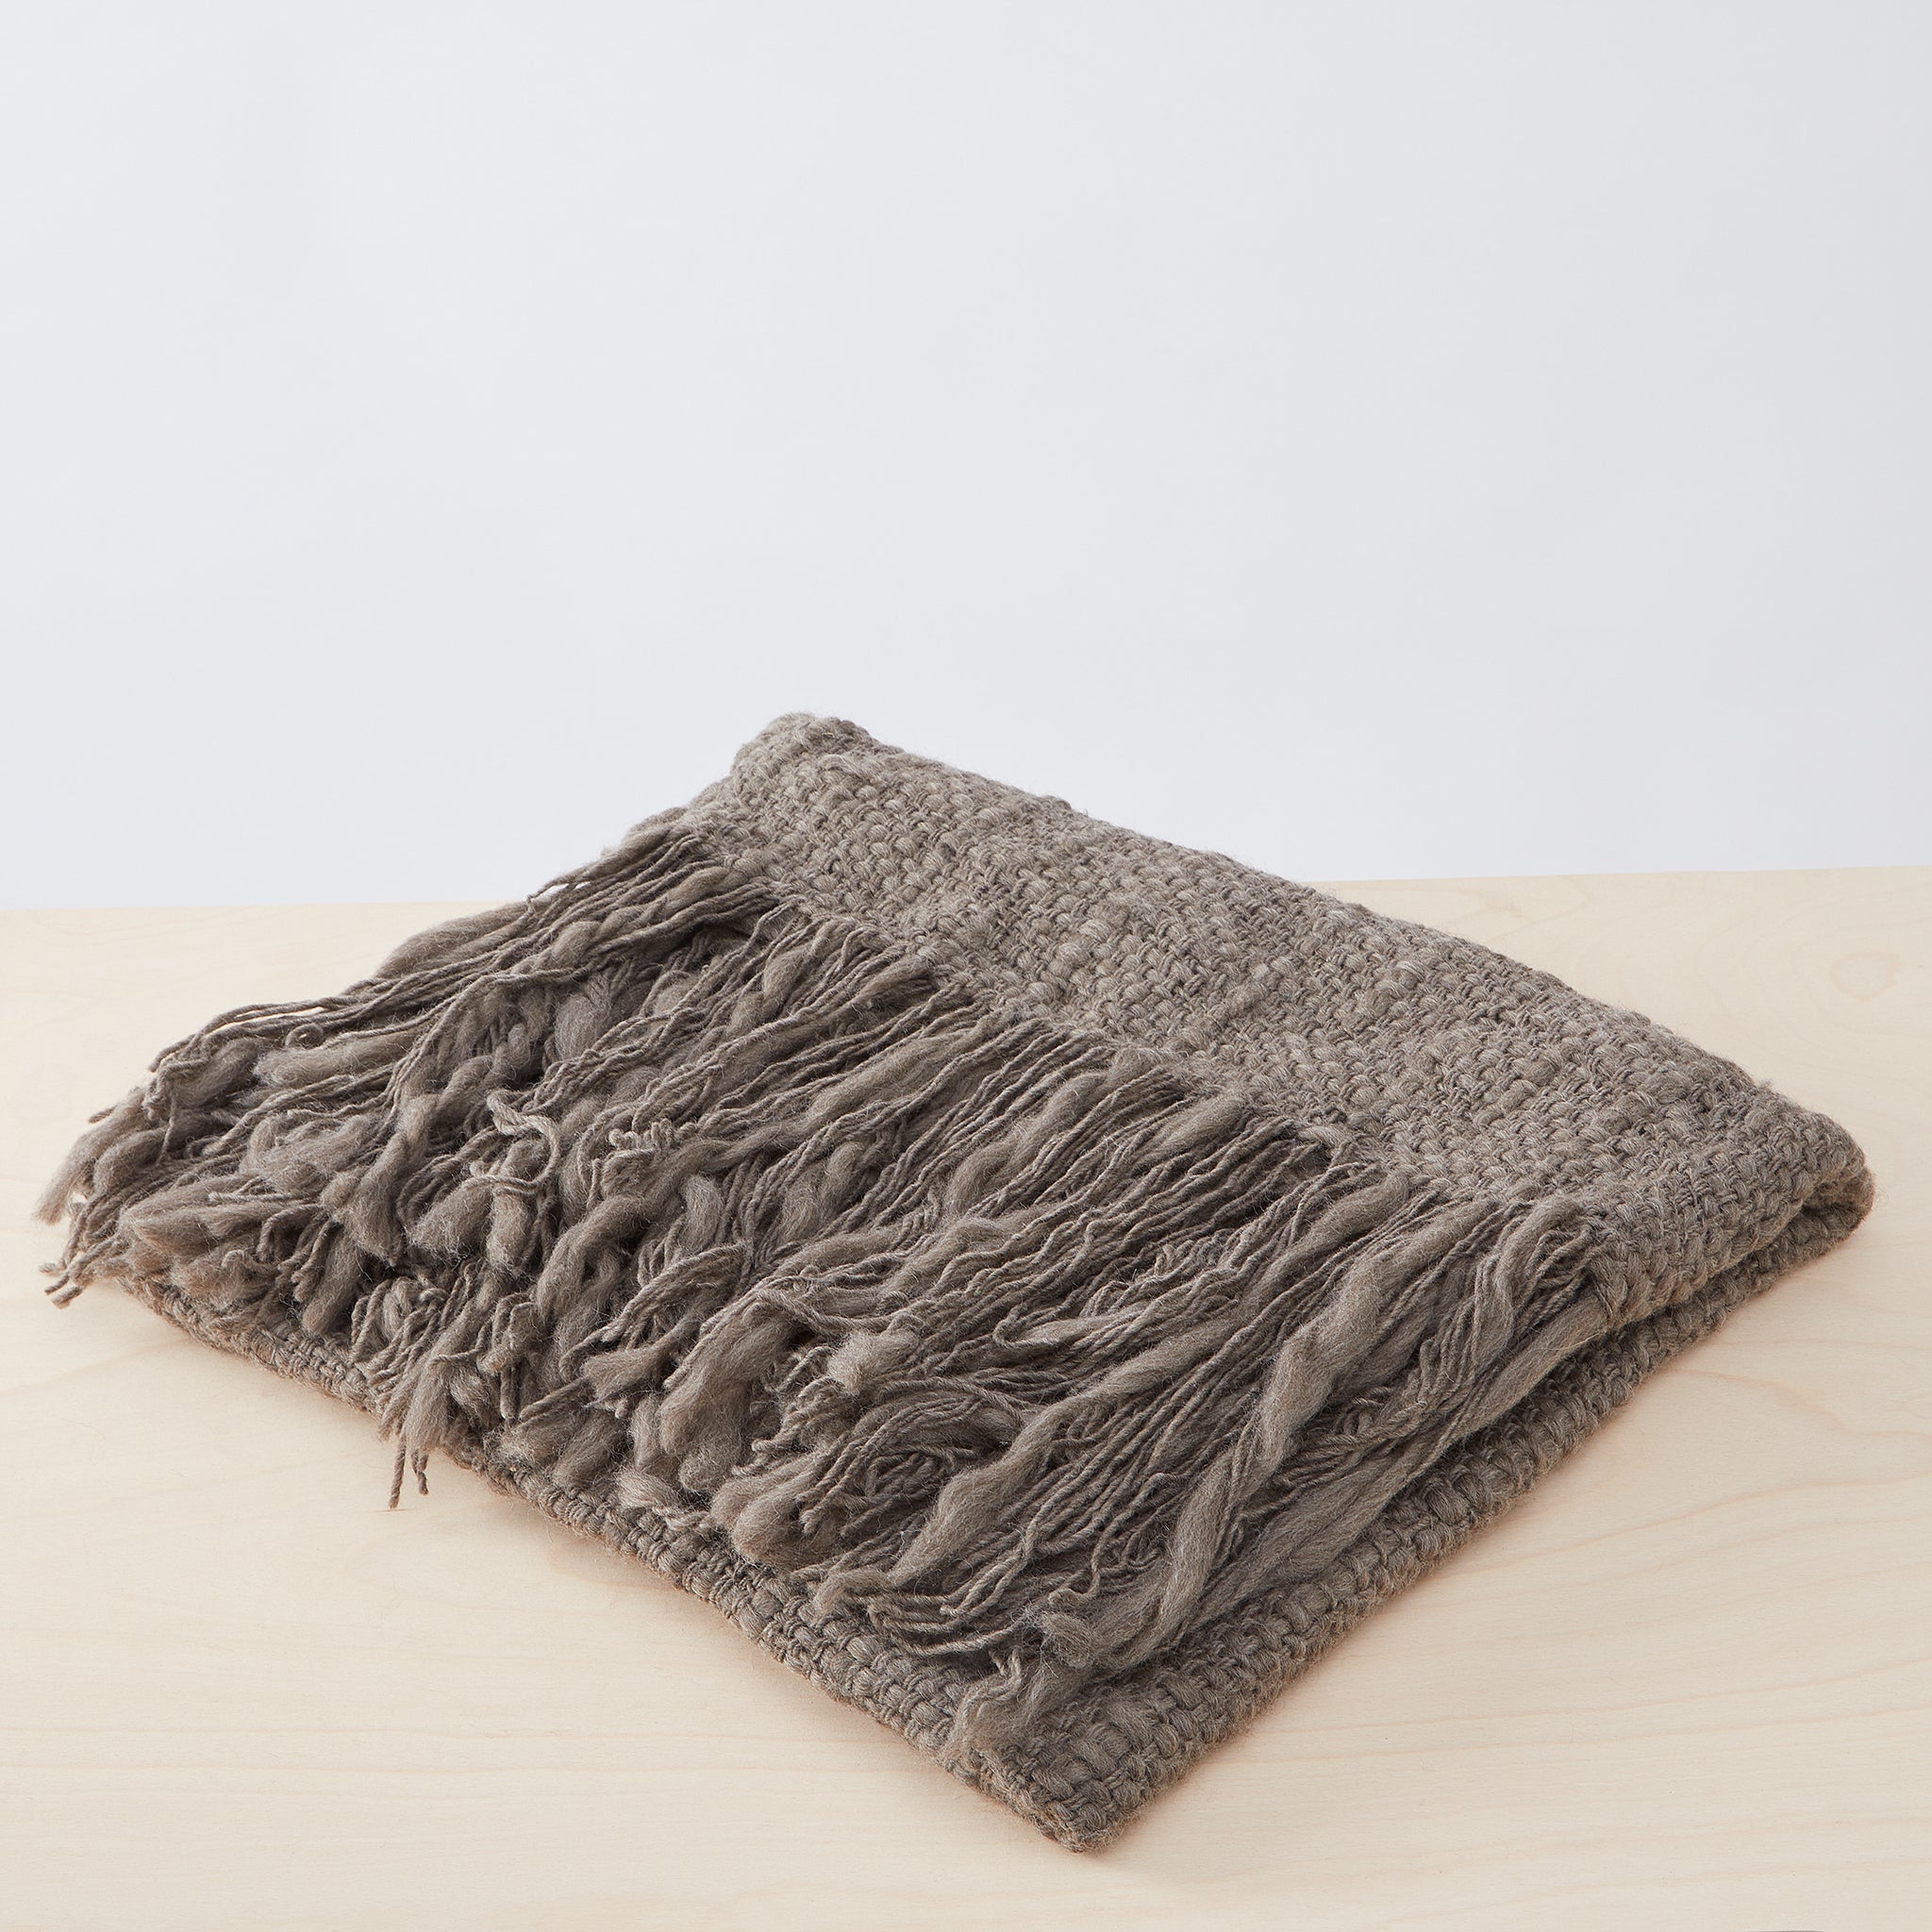 Handgewebte, himmlisch weiche Merino-Decke Sueño aus der besten, unbehandelten Wolle Patagoniens. Diese Decken sind nicht nur Unikate, sondern wahre Kunstwerke. Jetzt bei By Native online shoppen.